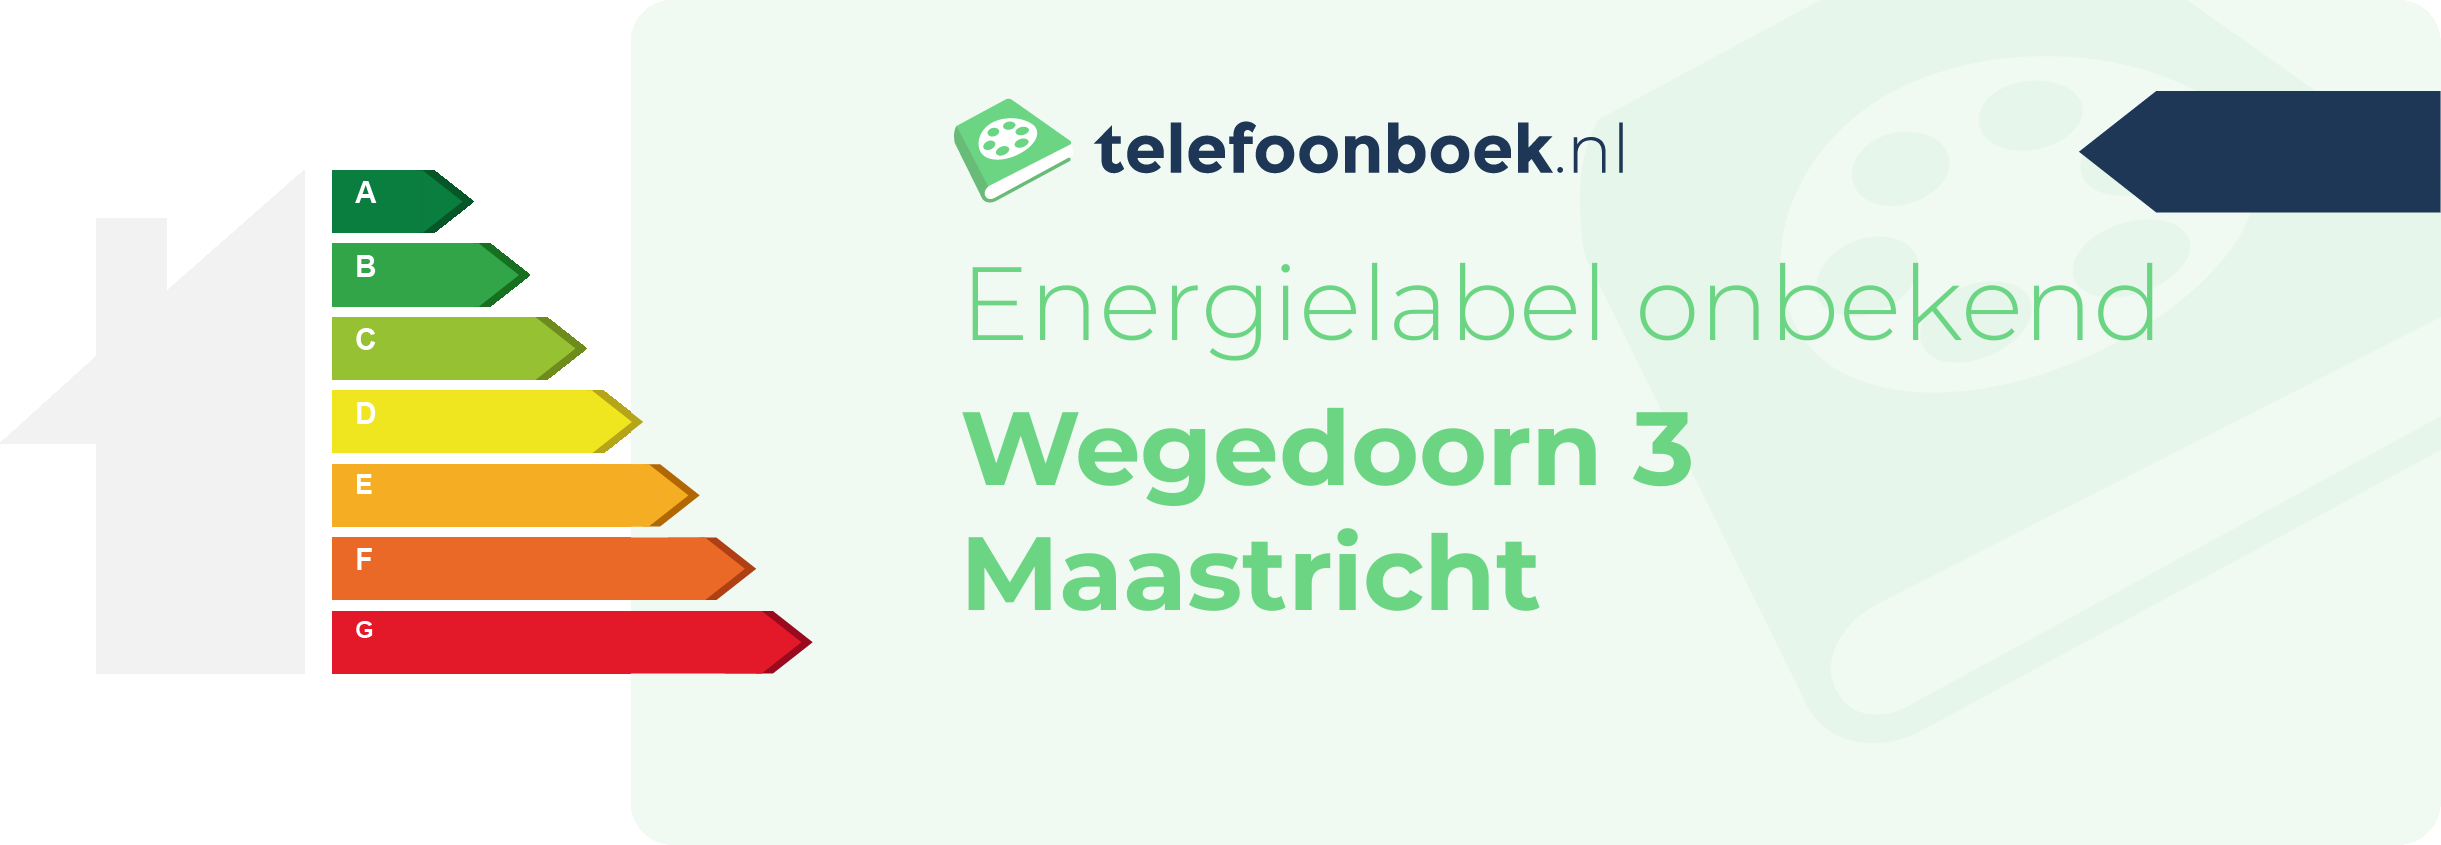 Energielabel Wegedoorn 3 Maastricht